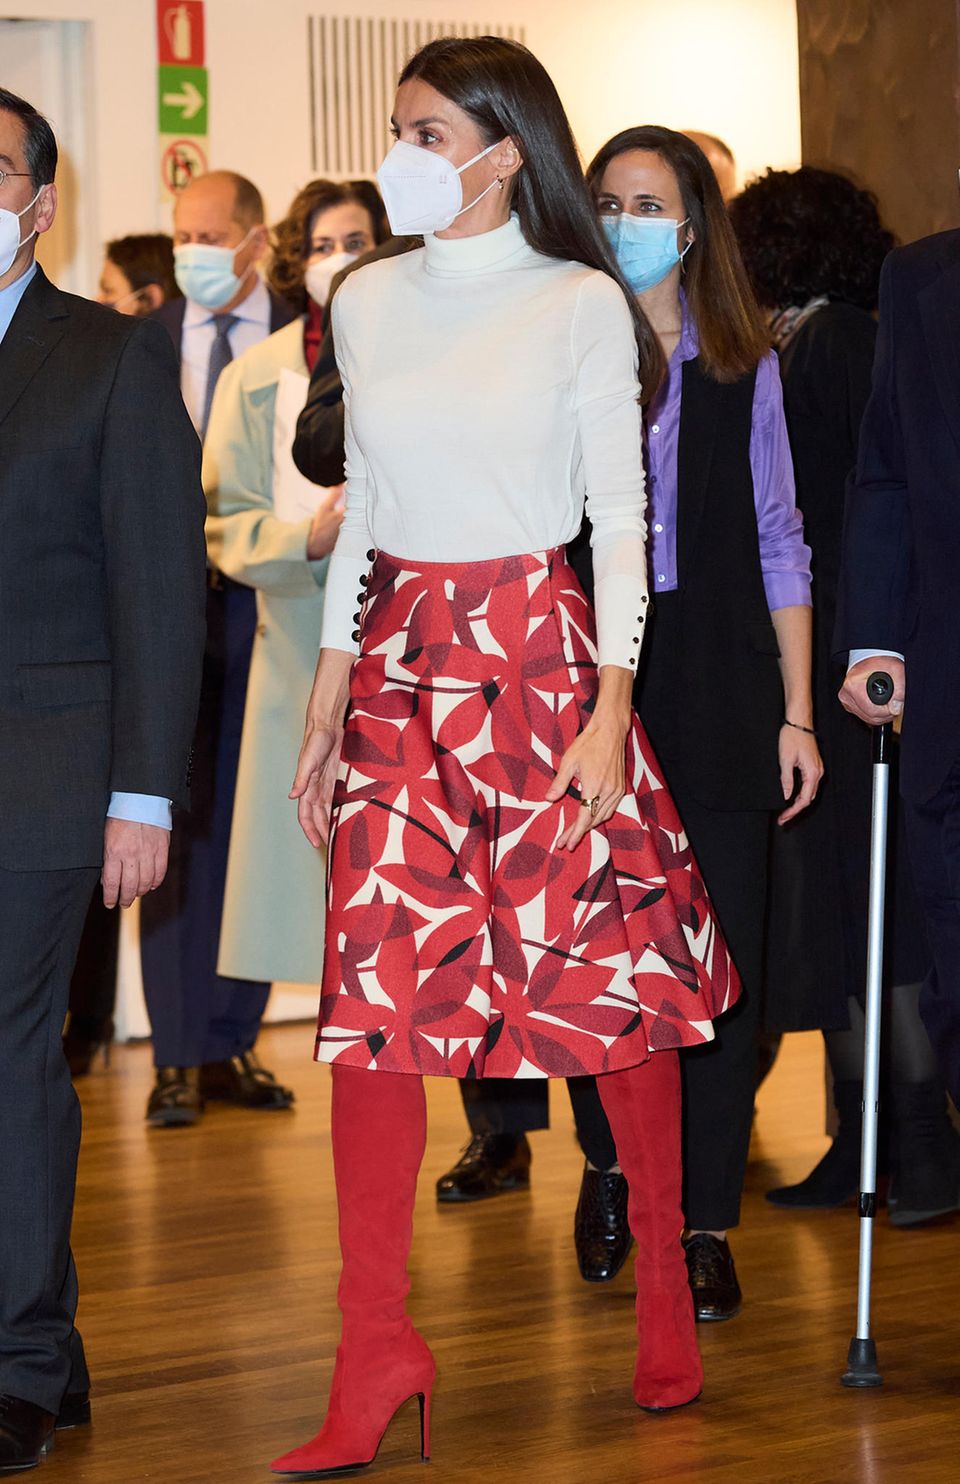 Mit diesen knallroten Overknee-Stiefeln ist Königin Letizia von Spanien der Hingucker des Abends. Bei dem 75. Jahrestag von Unicef in Madrid kombiniert sie die auffälligen Schuhe von Margrit mit einem langen Rock im Blumenmuster und einem weißen Rollkragenpullover. Die schöne Königin beweist damit mal wieder ihr Stilbewusstsein und Mut zur Farbe.